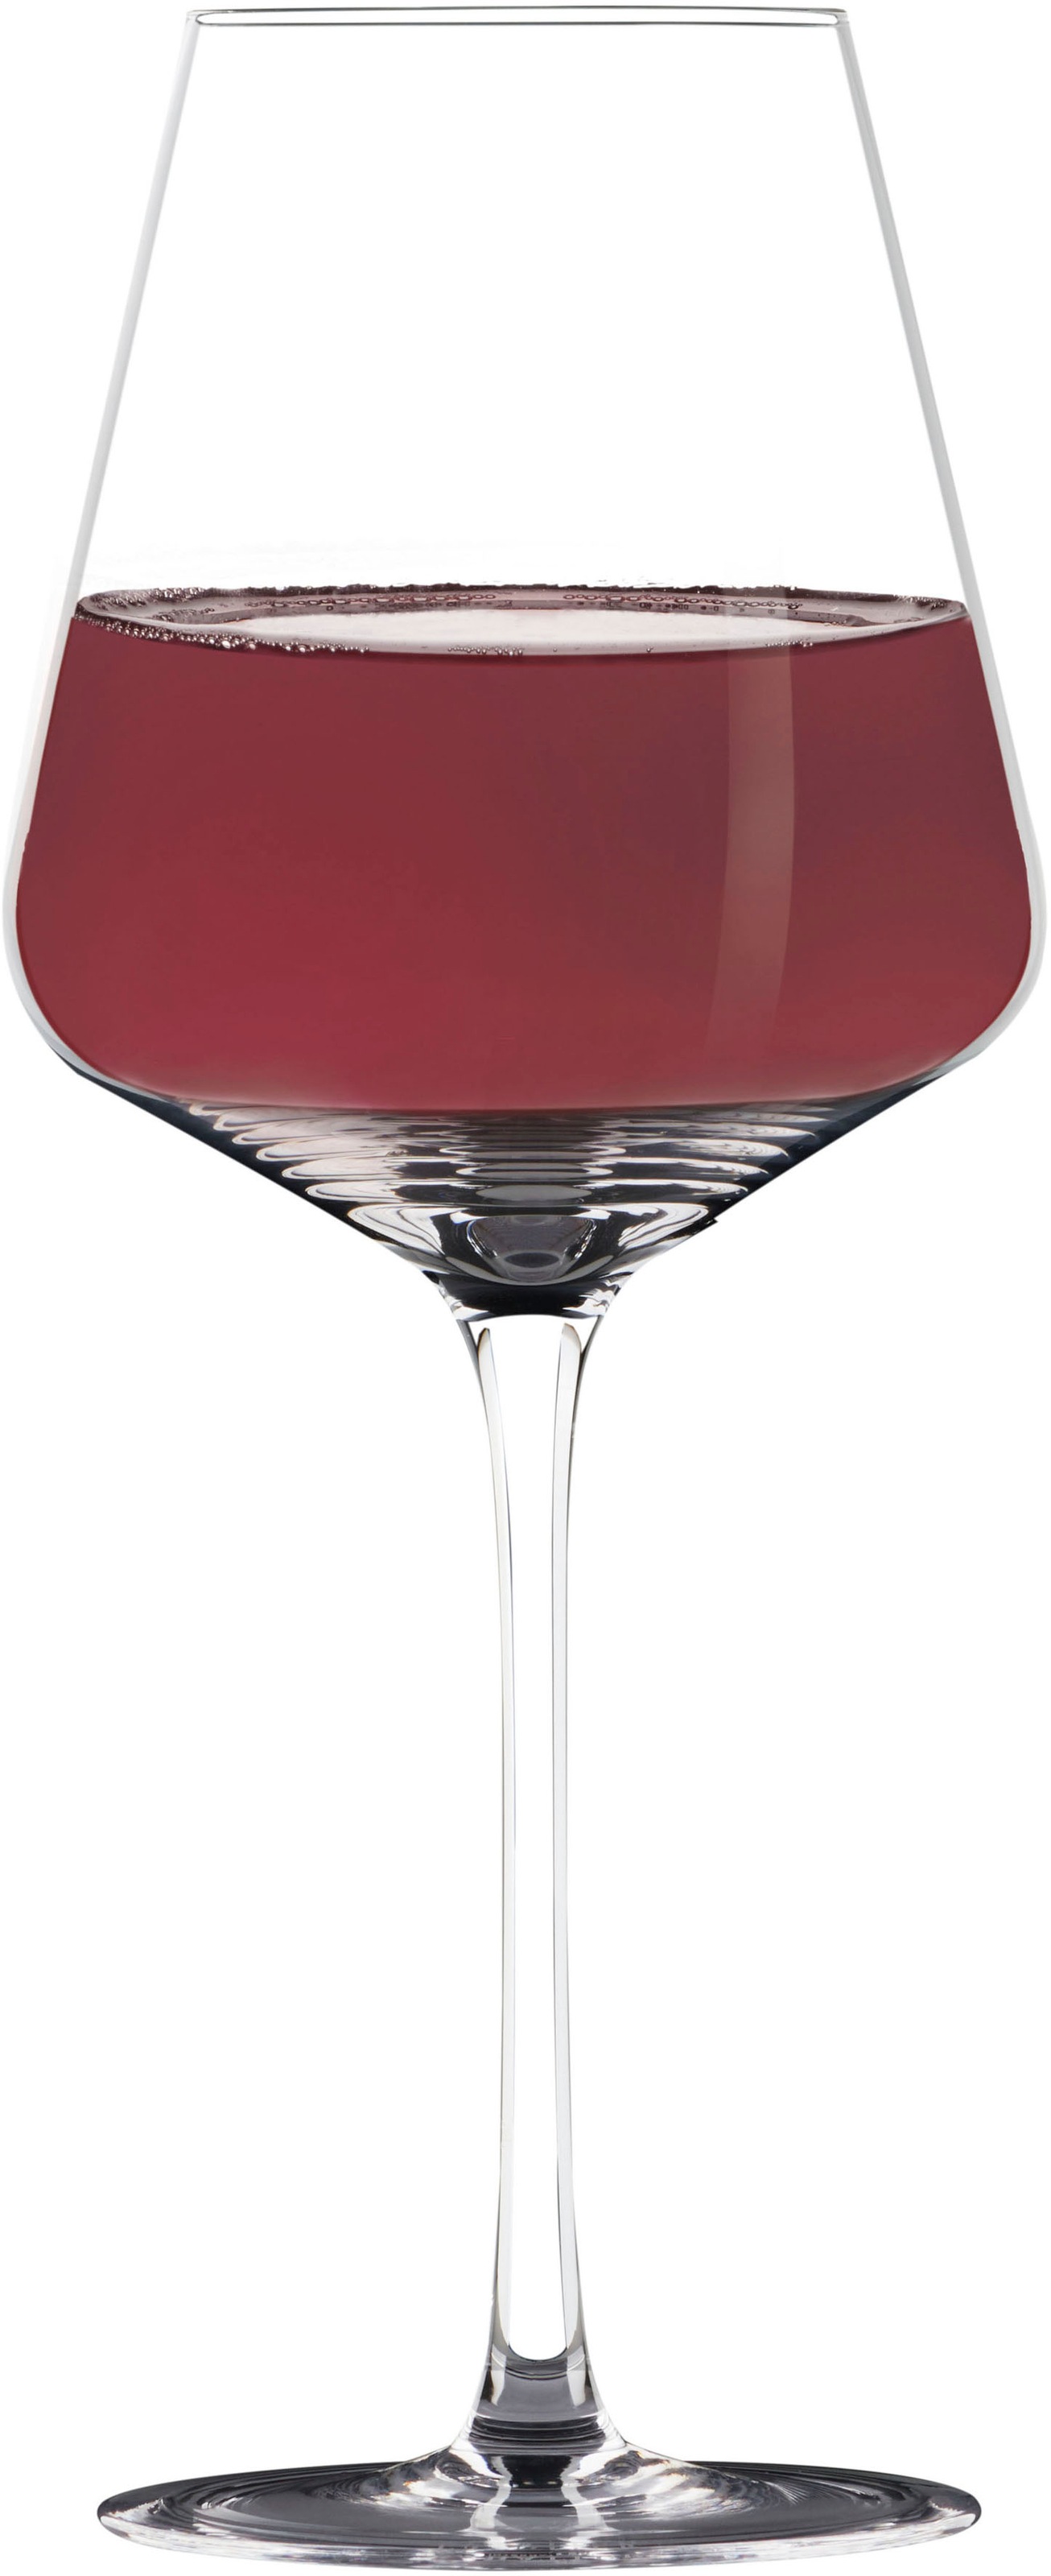 Rotweinglas, (Set, 2 tlg., 2 x Rotwein Kristallglas), Inhalt 700 ml, 2-teilig